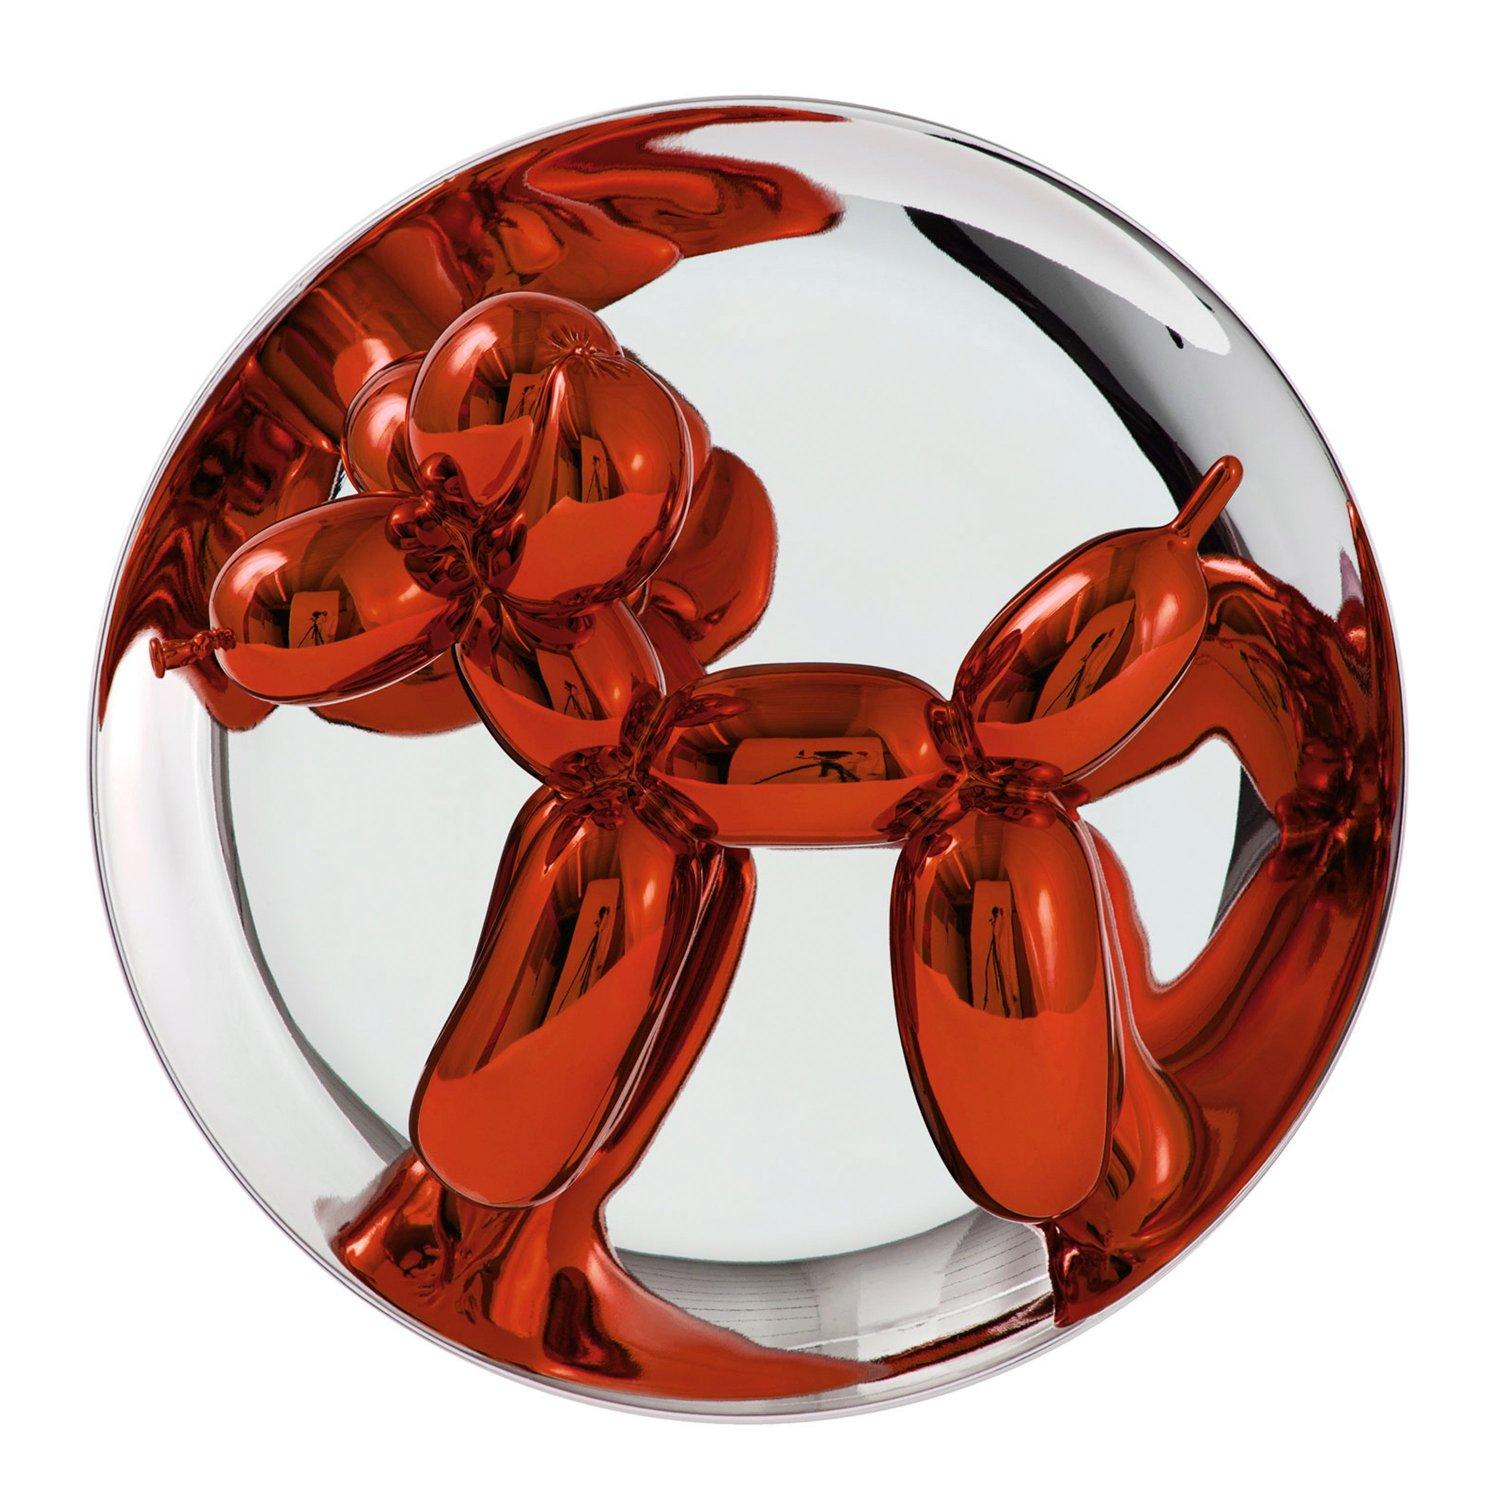 Balloon Dog (Orange) - Jeff Koons, Contemporain, 21ème siècle, Sculpture, Décoration, Edition limitée

Porcelaine de Limoges avec revêtement chromatique métallisé
Edition de 2300
Signé et numéroté
En parfait état, tel qu'il a été acquis auprès du